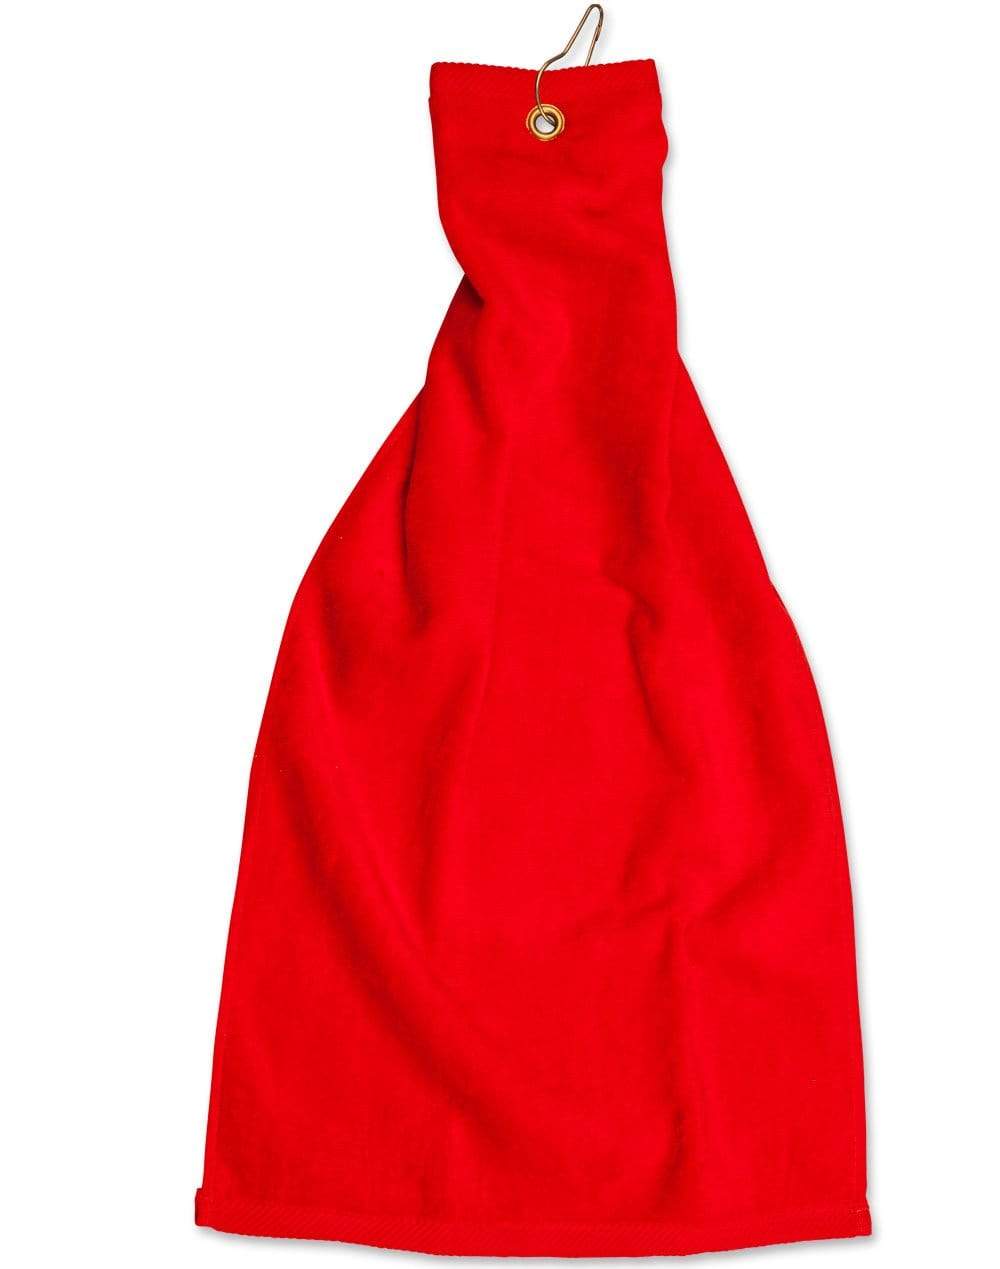 Golf Towel With Ring & Hook TW01A Work Wear Australian Industrial Wear 38 x 65 cm Red 